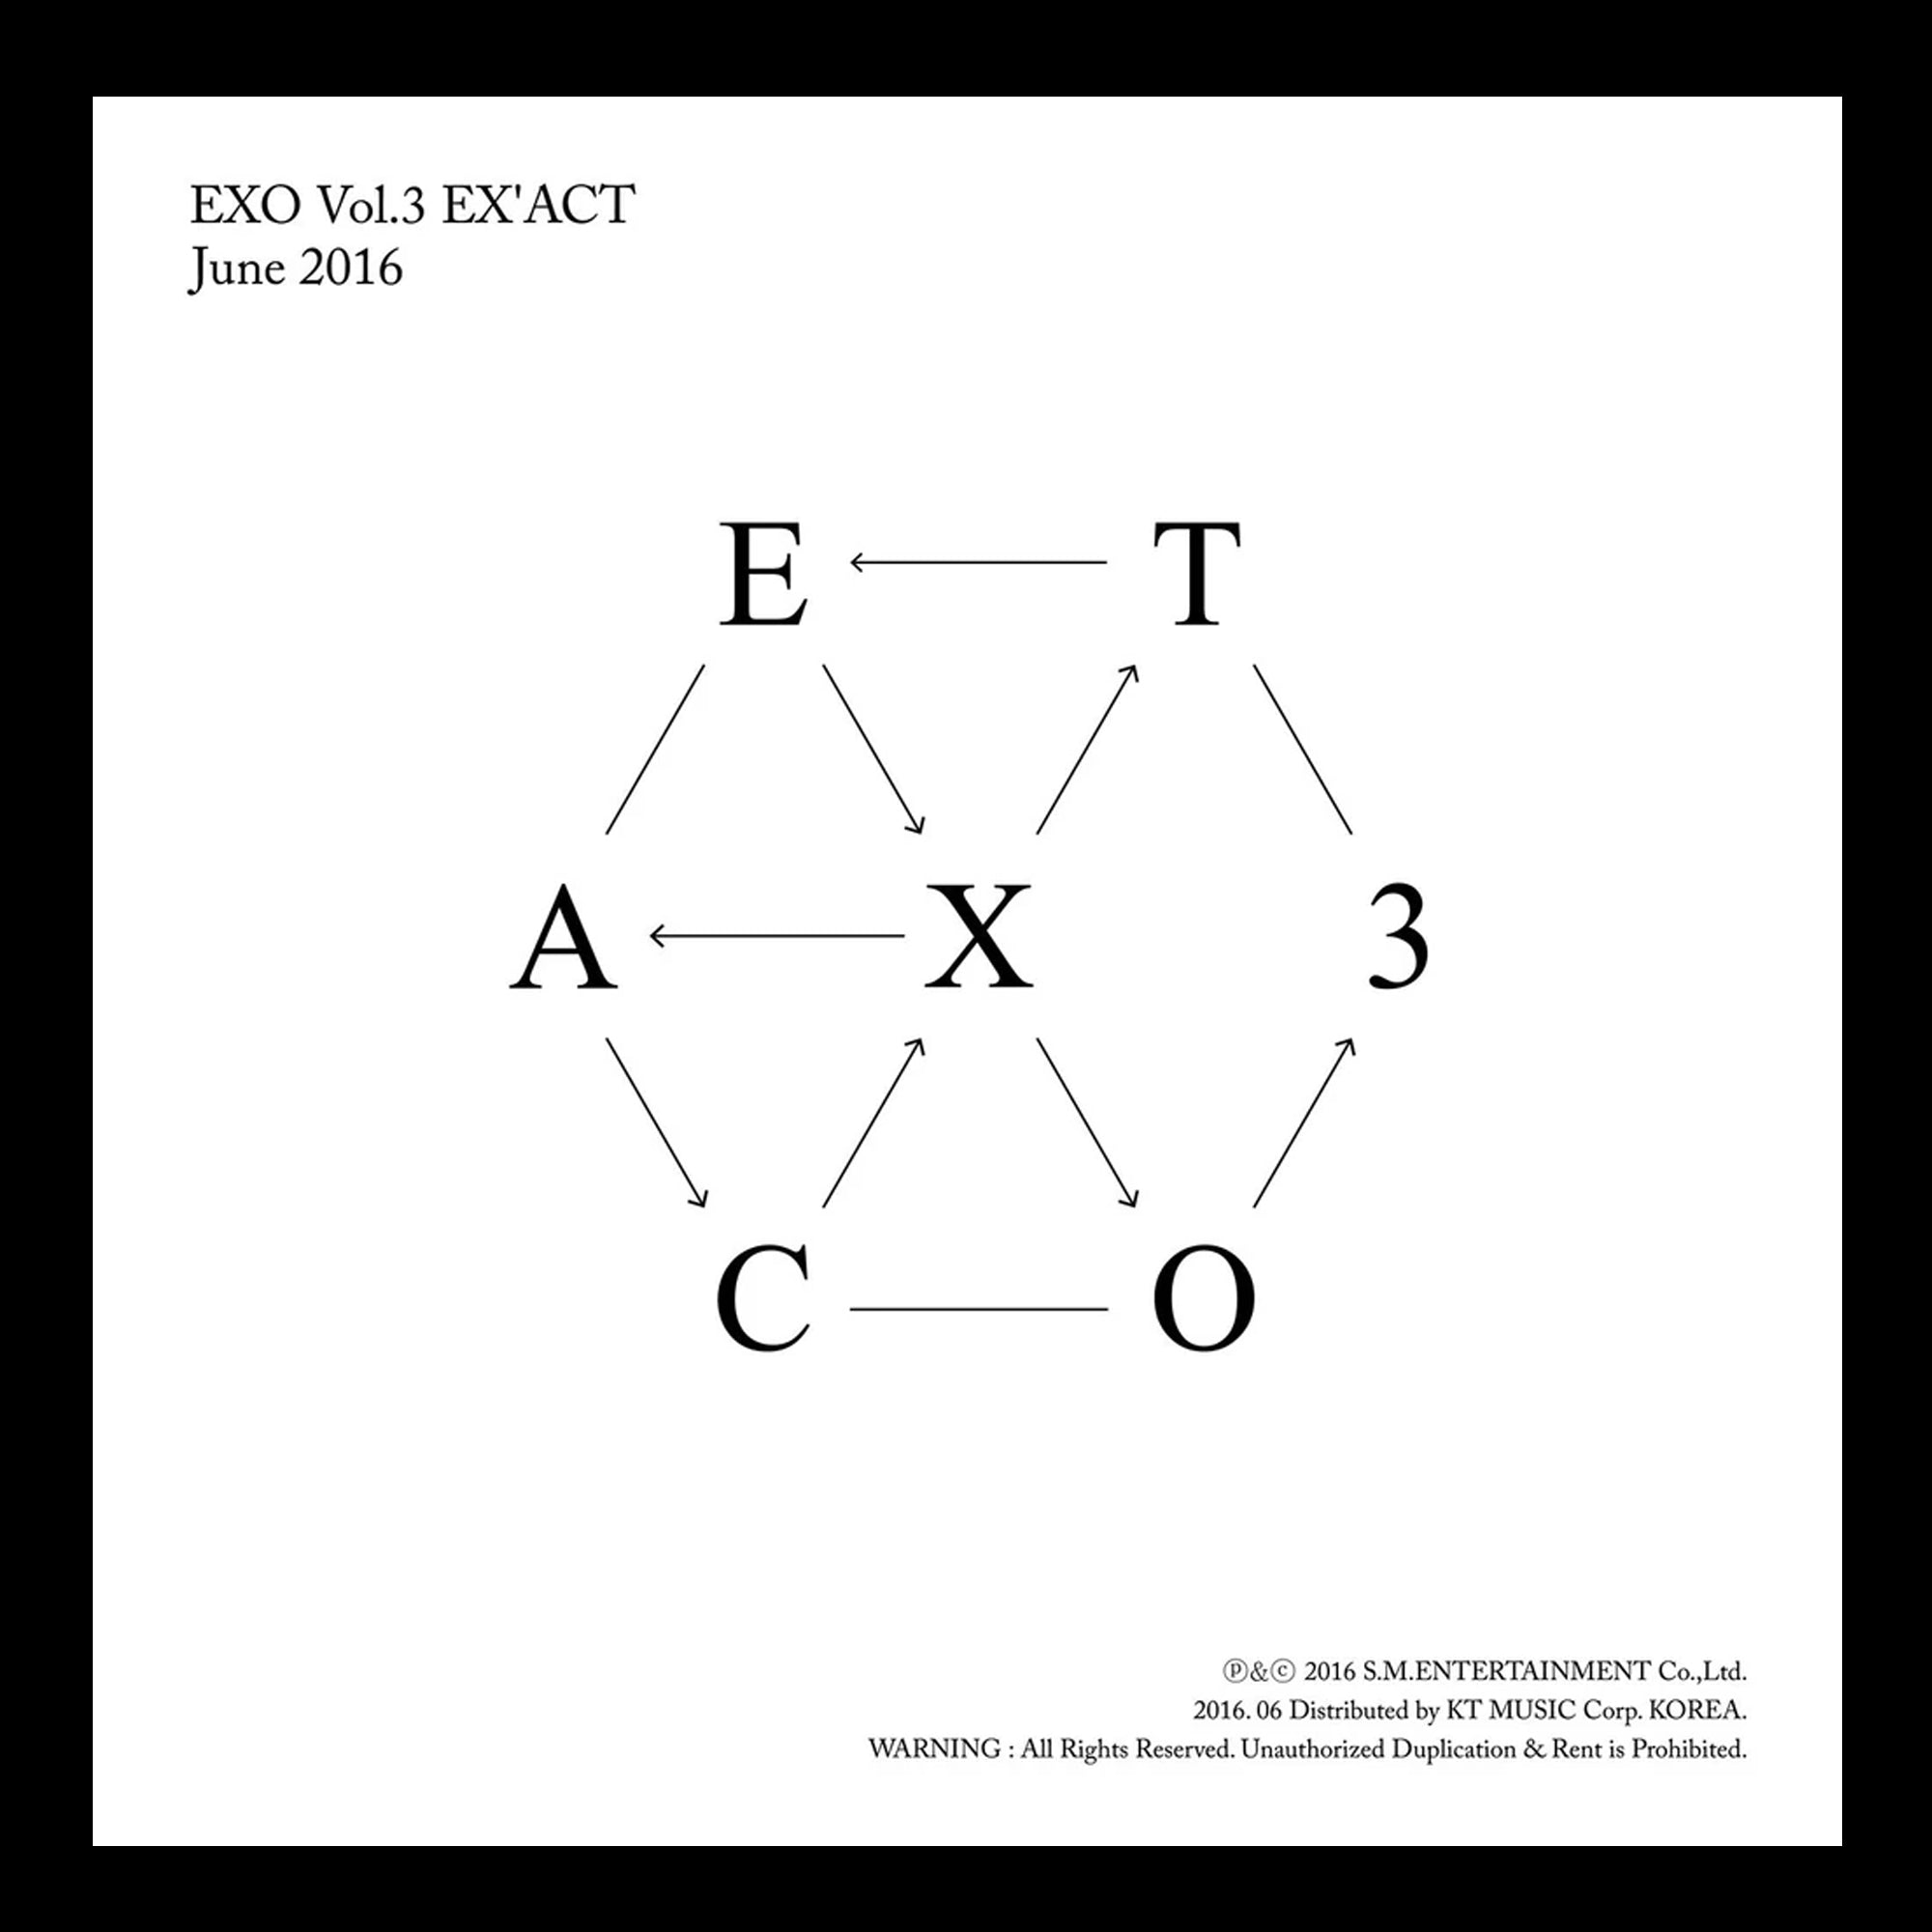 EXO - EX'ACT Ver. M